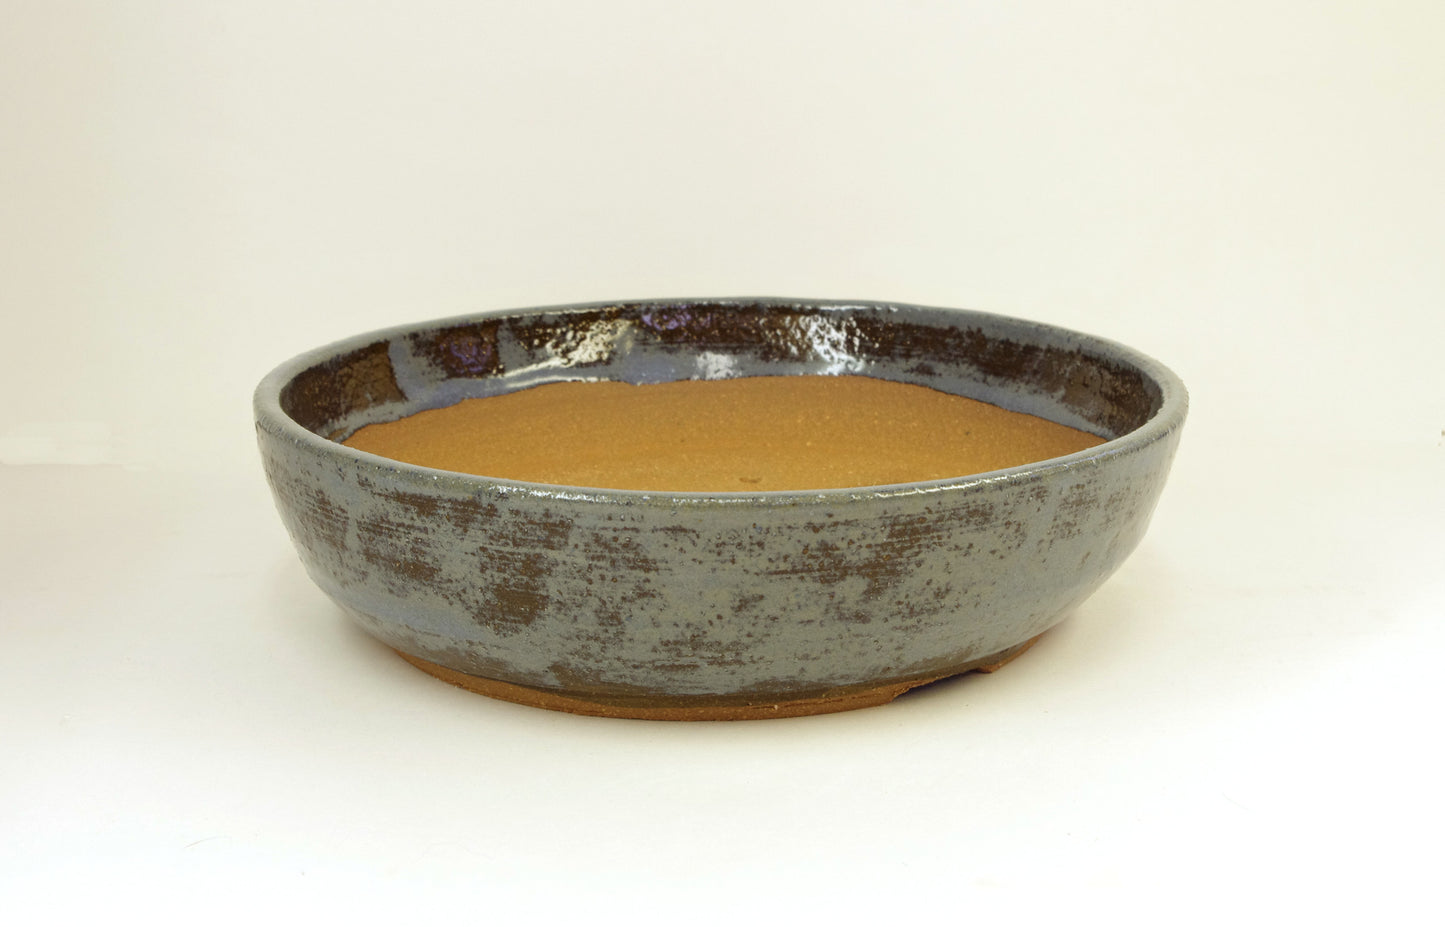 2131 Hand Thrown Stoneware Bonsai Pot, Medium Blues, Brown 8 3/8 x 2 1/8